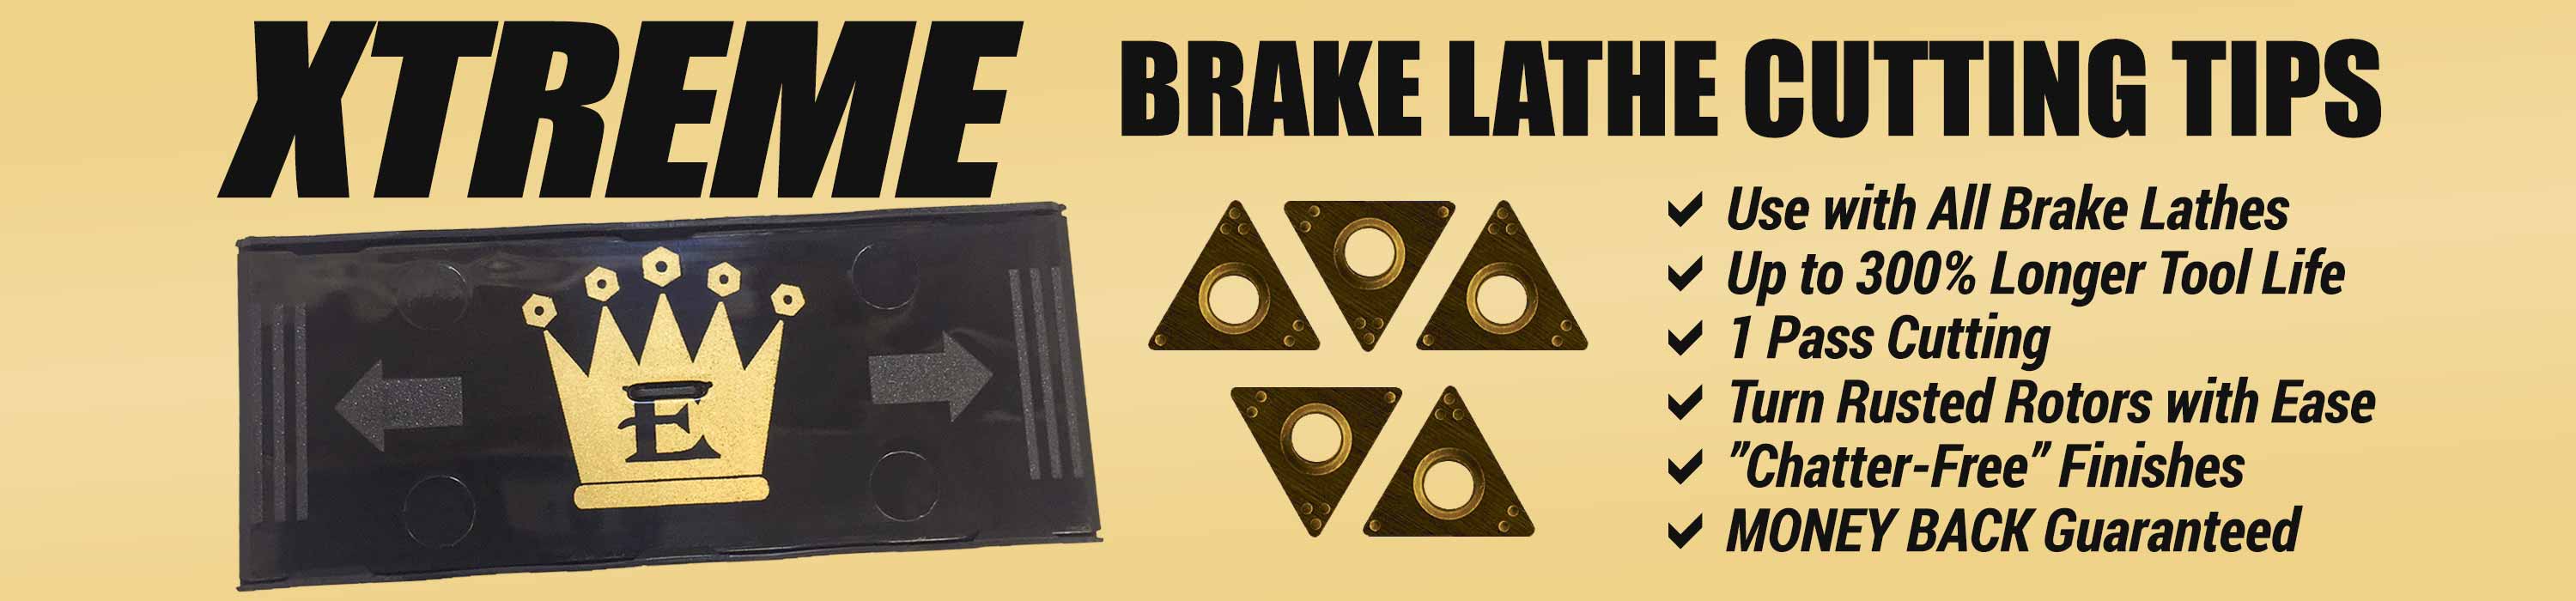 XTREME Brake Lathe Cutting Tips - Only at Eisenking